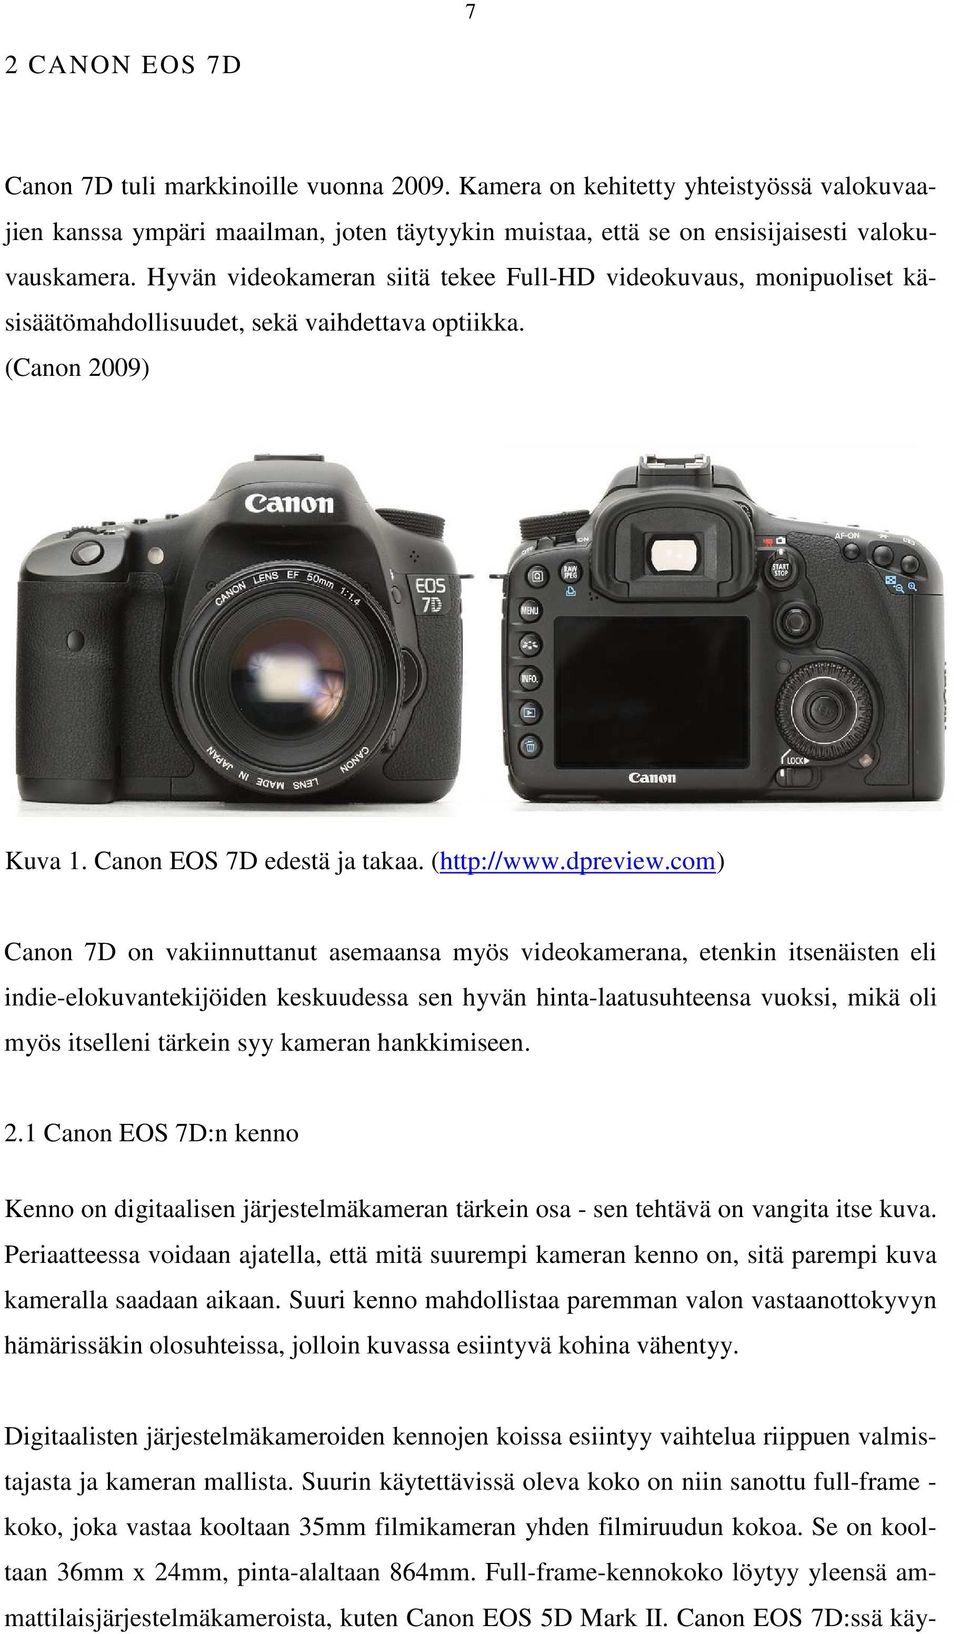 com) Canon 7D on vakiinnuttanut asemaansa myös videokamerana, etenkin itsenäisten eli indie-elokuvantekijöiden keskuudessa sen hyvän hinta-laatusuhteensa vuoksi, mikä oli myös itselleni tärkein syy